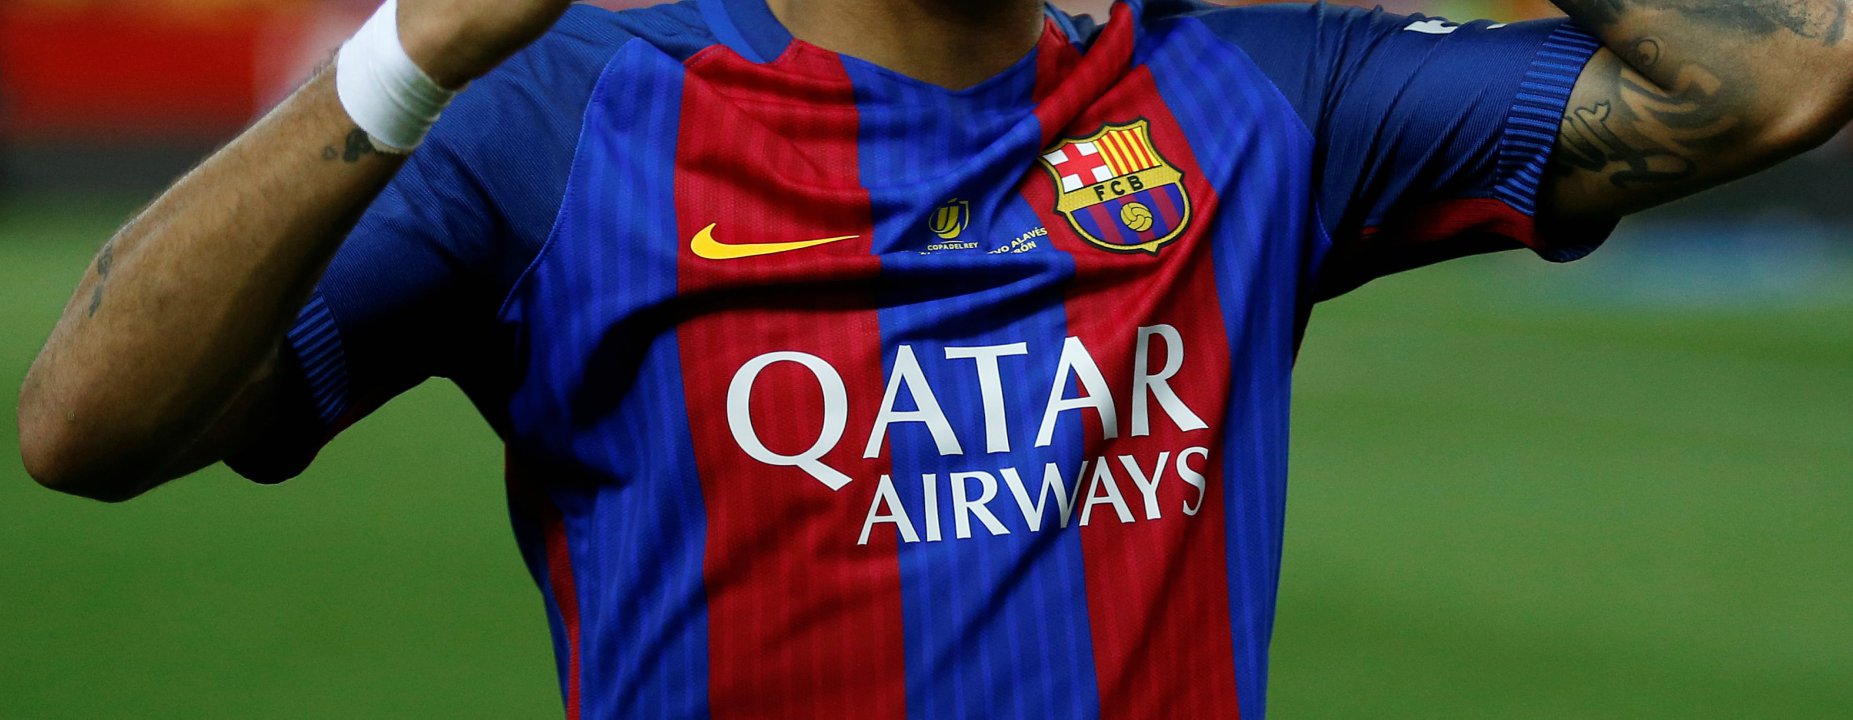 El FC Barcelona anunció oficialmente los uniformes de la próxima temporada y además indicó que los mismos saldrán a la venta el 1 de junio